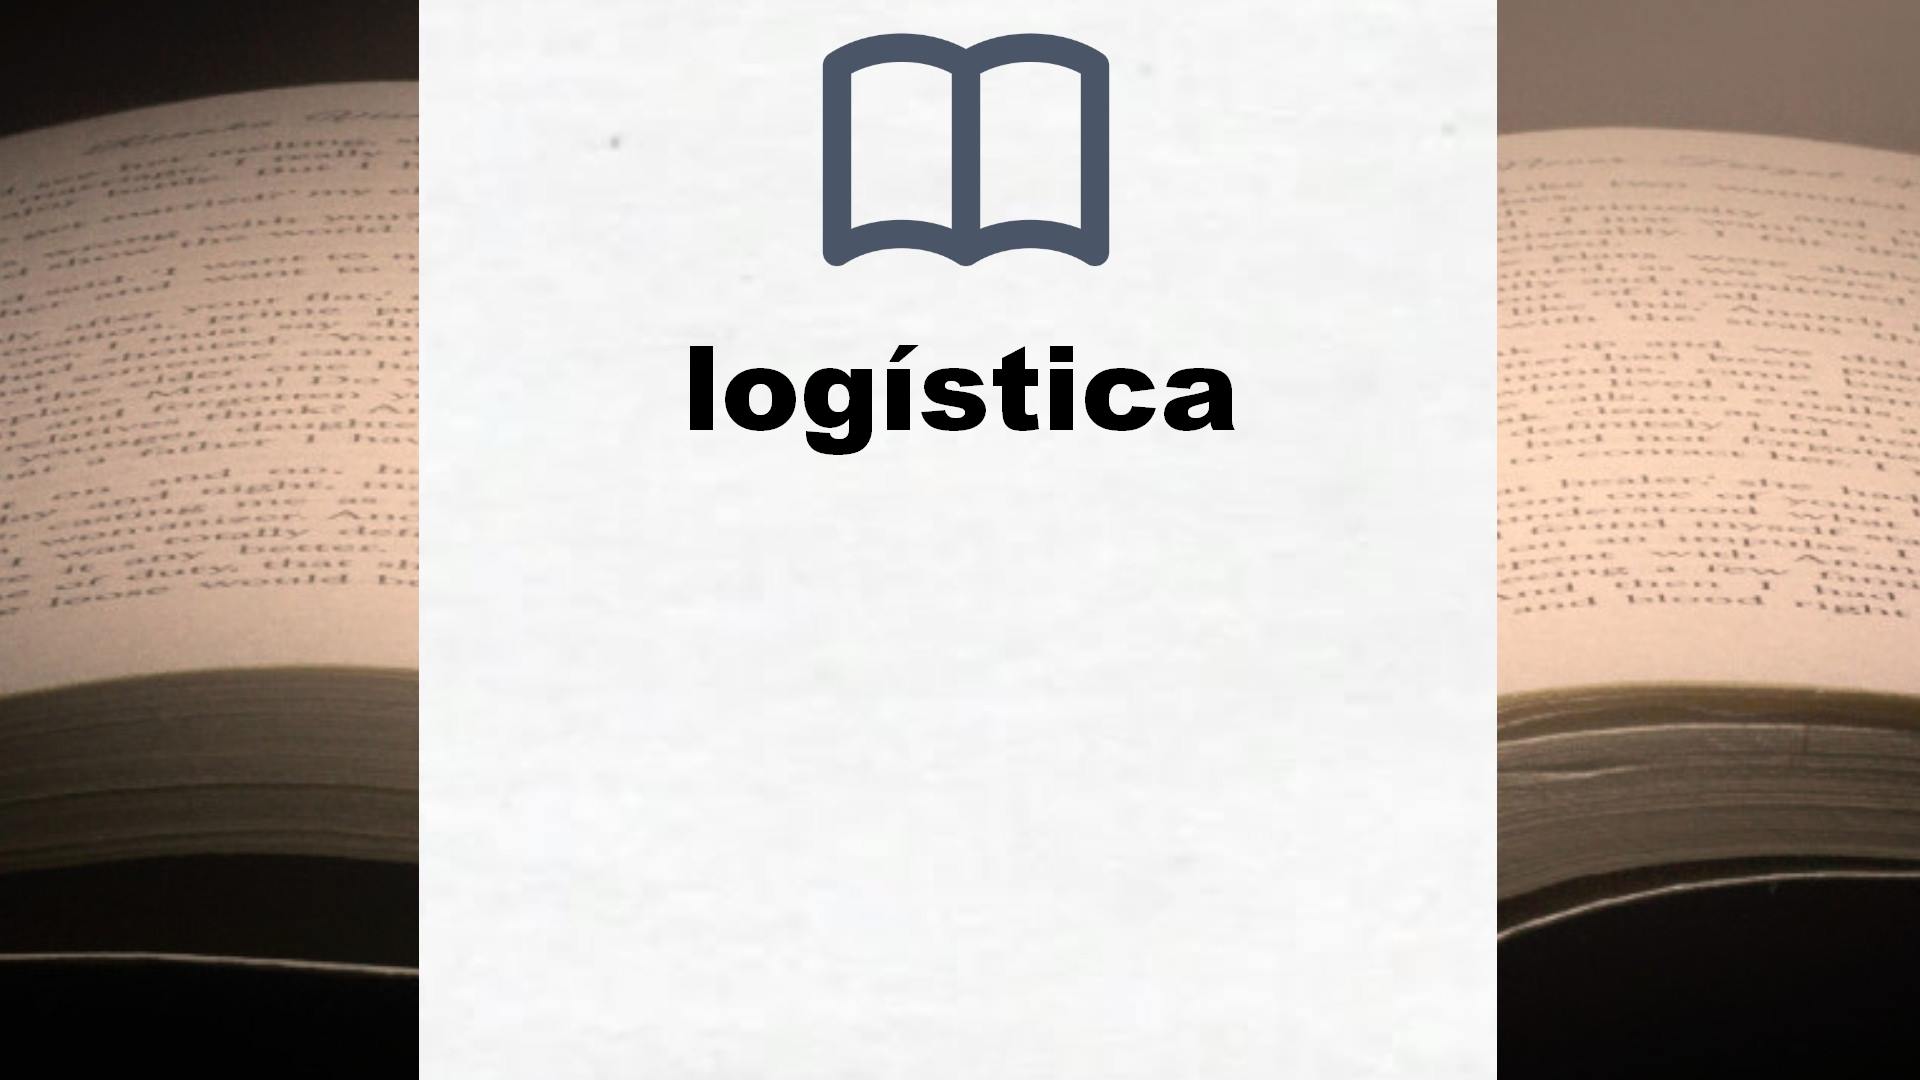 Libros sobre logística